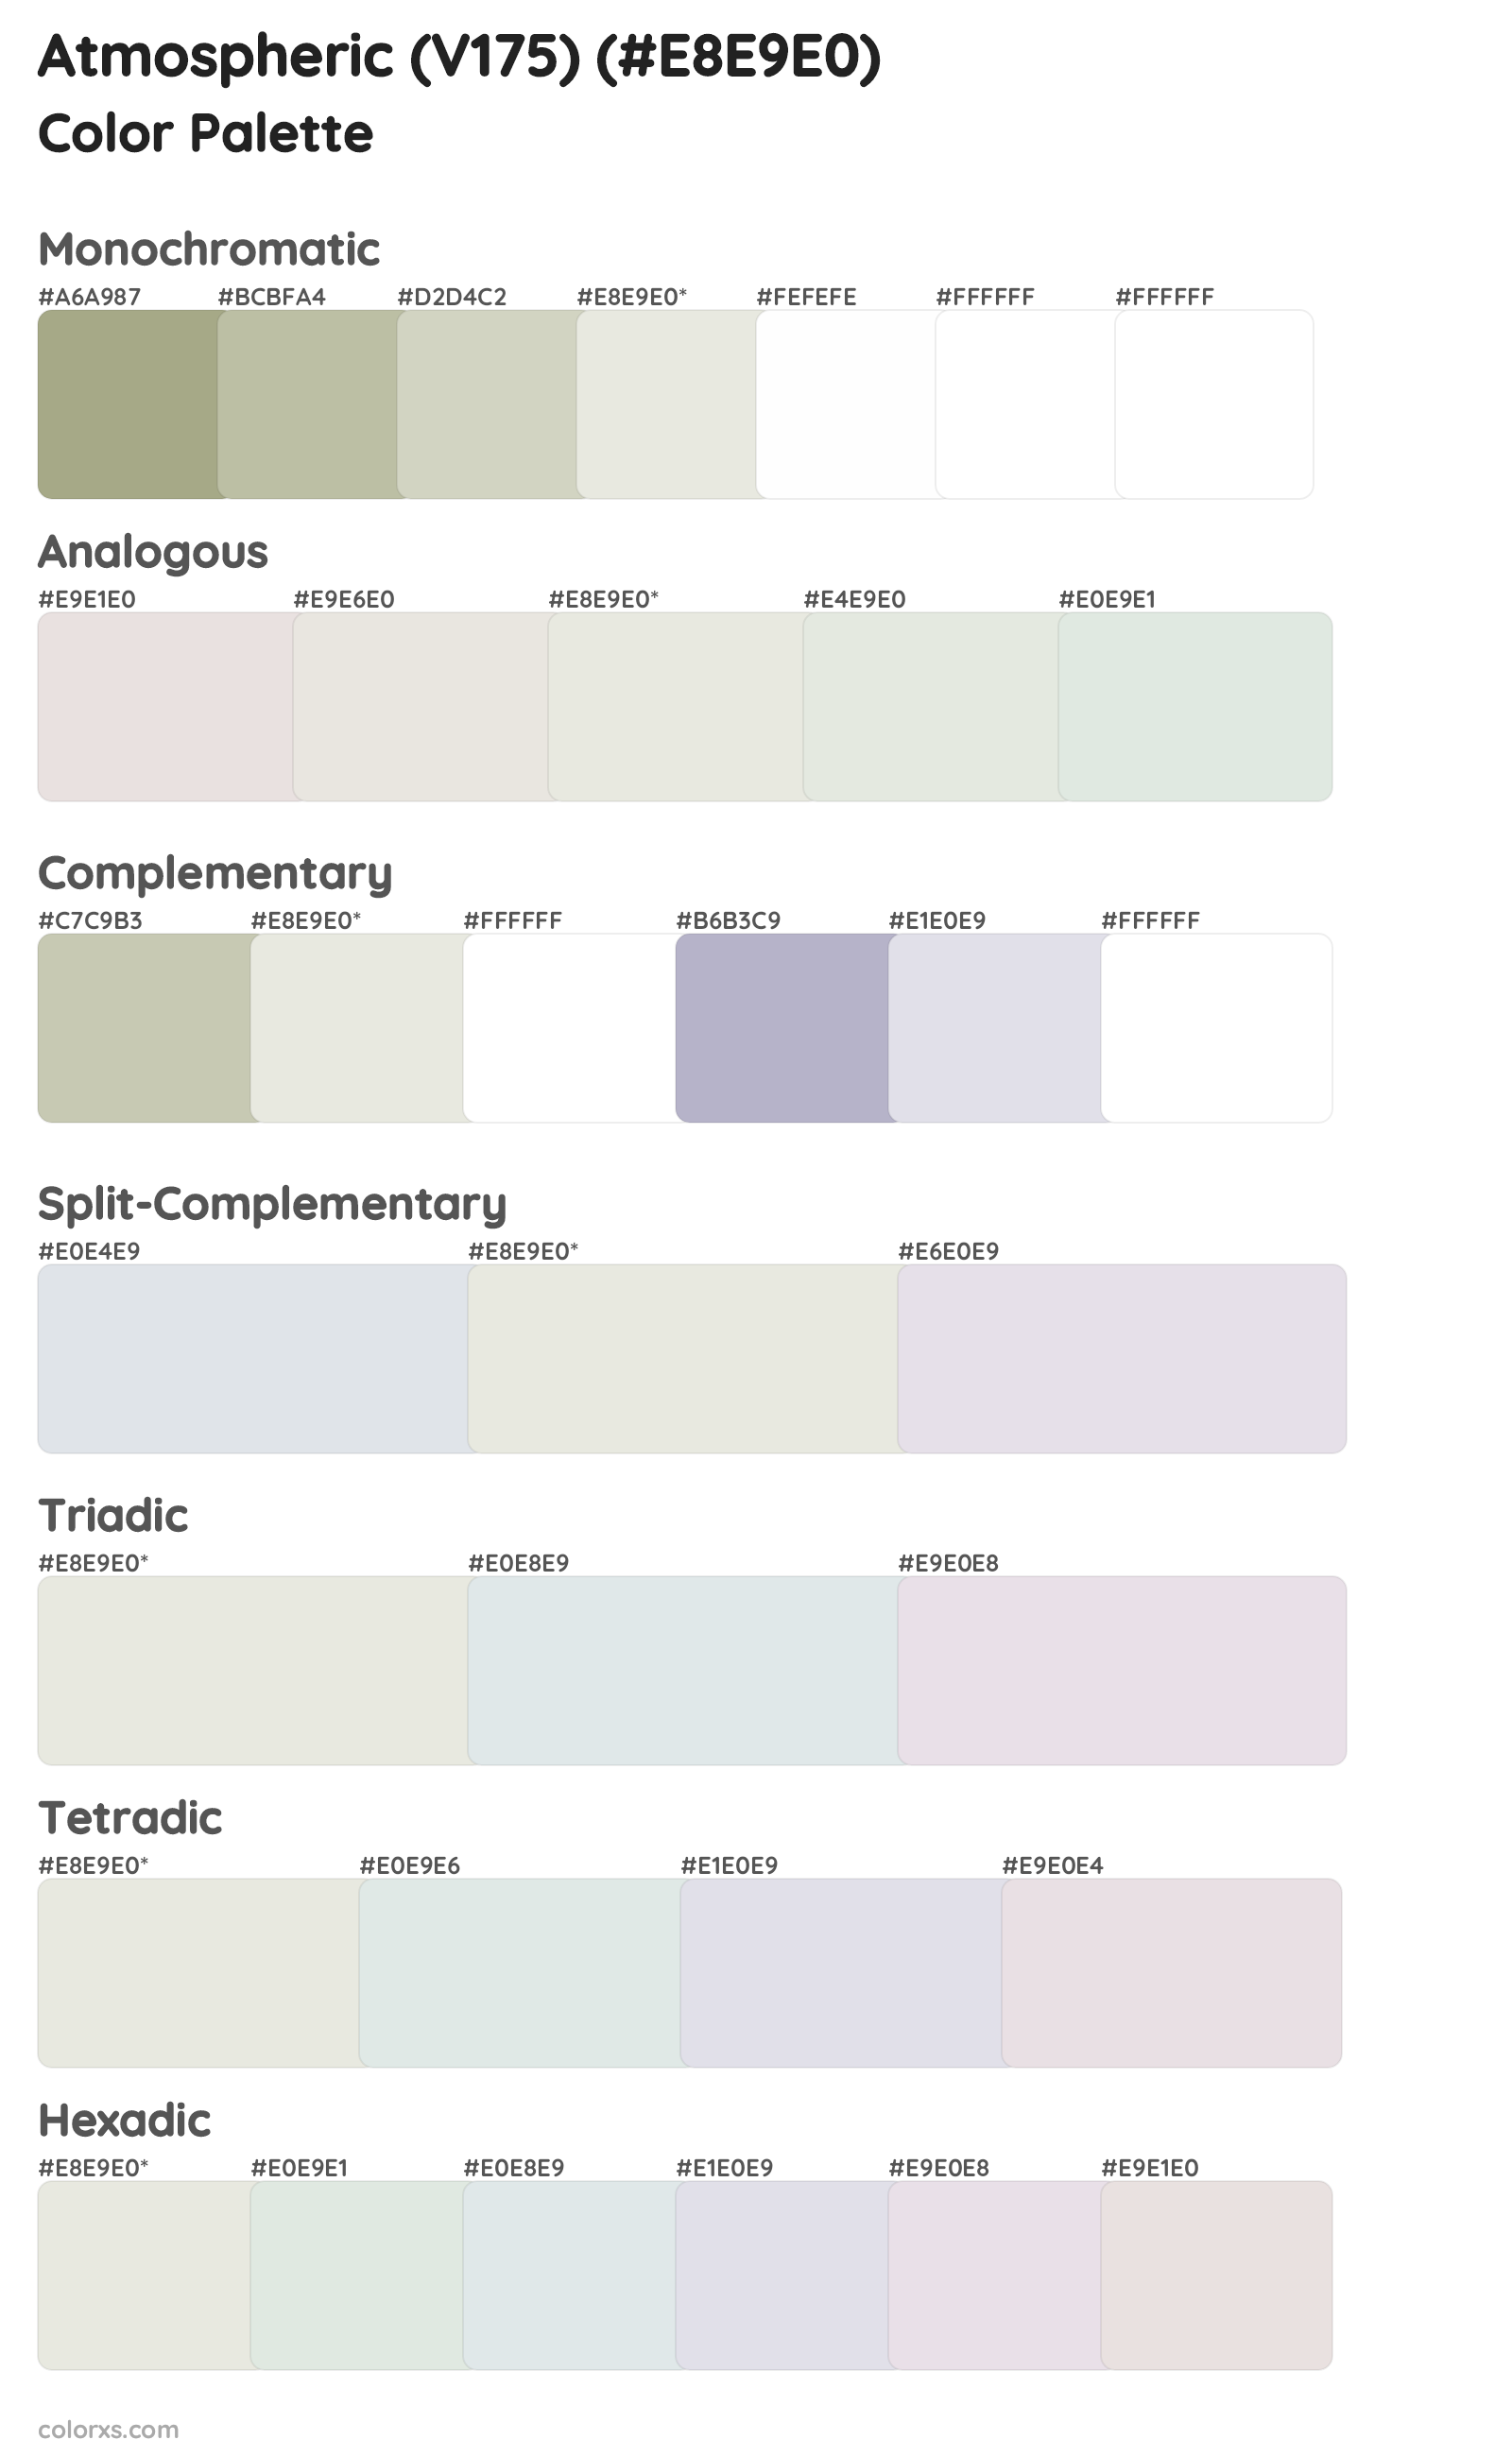 Atmospheric (V175) Color Scheme Palettes